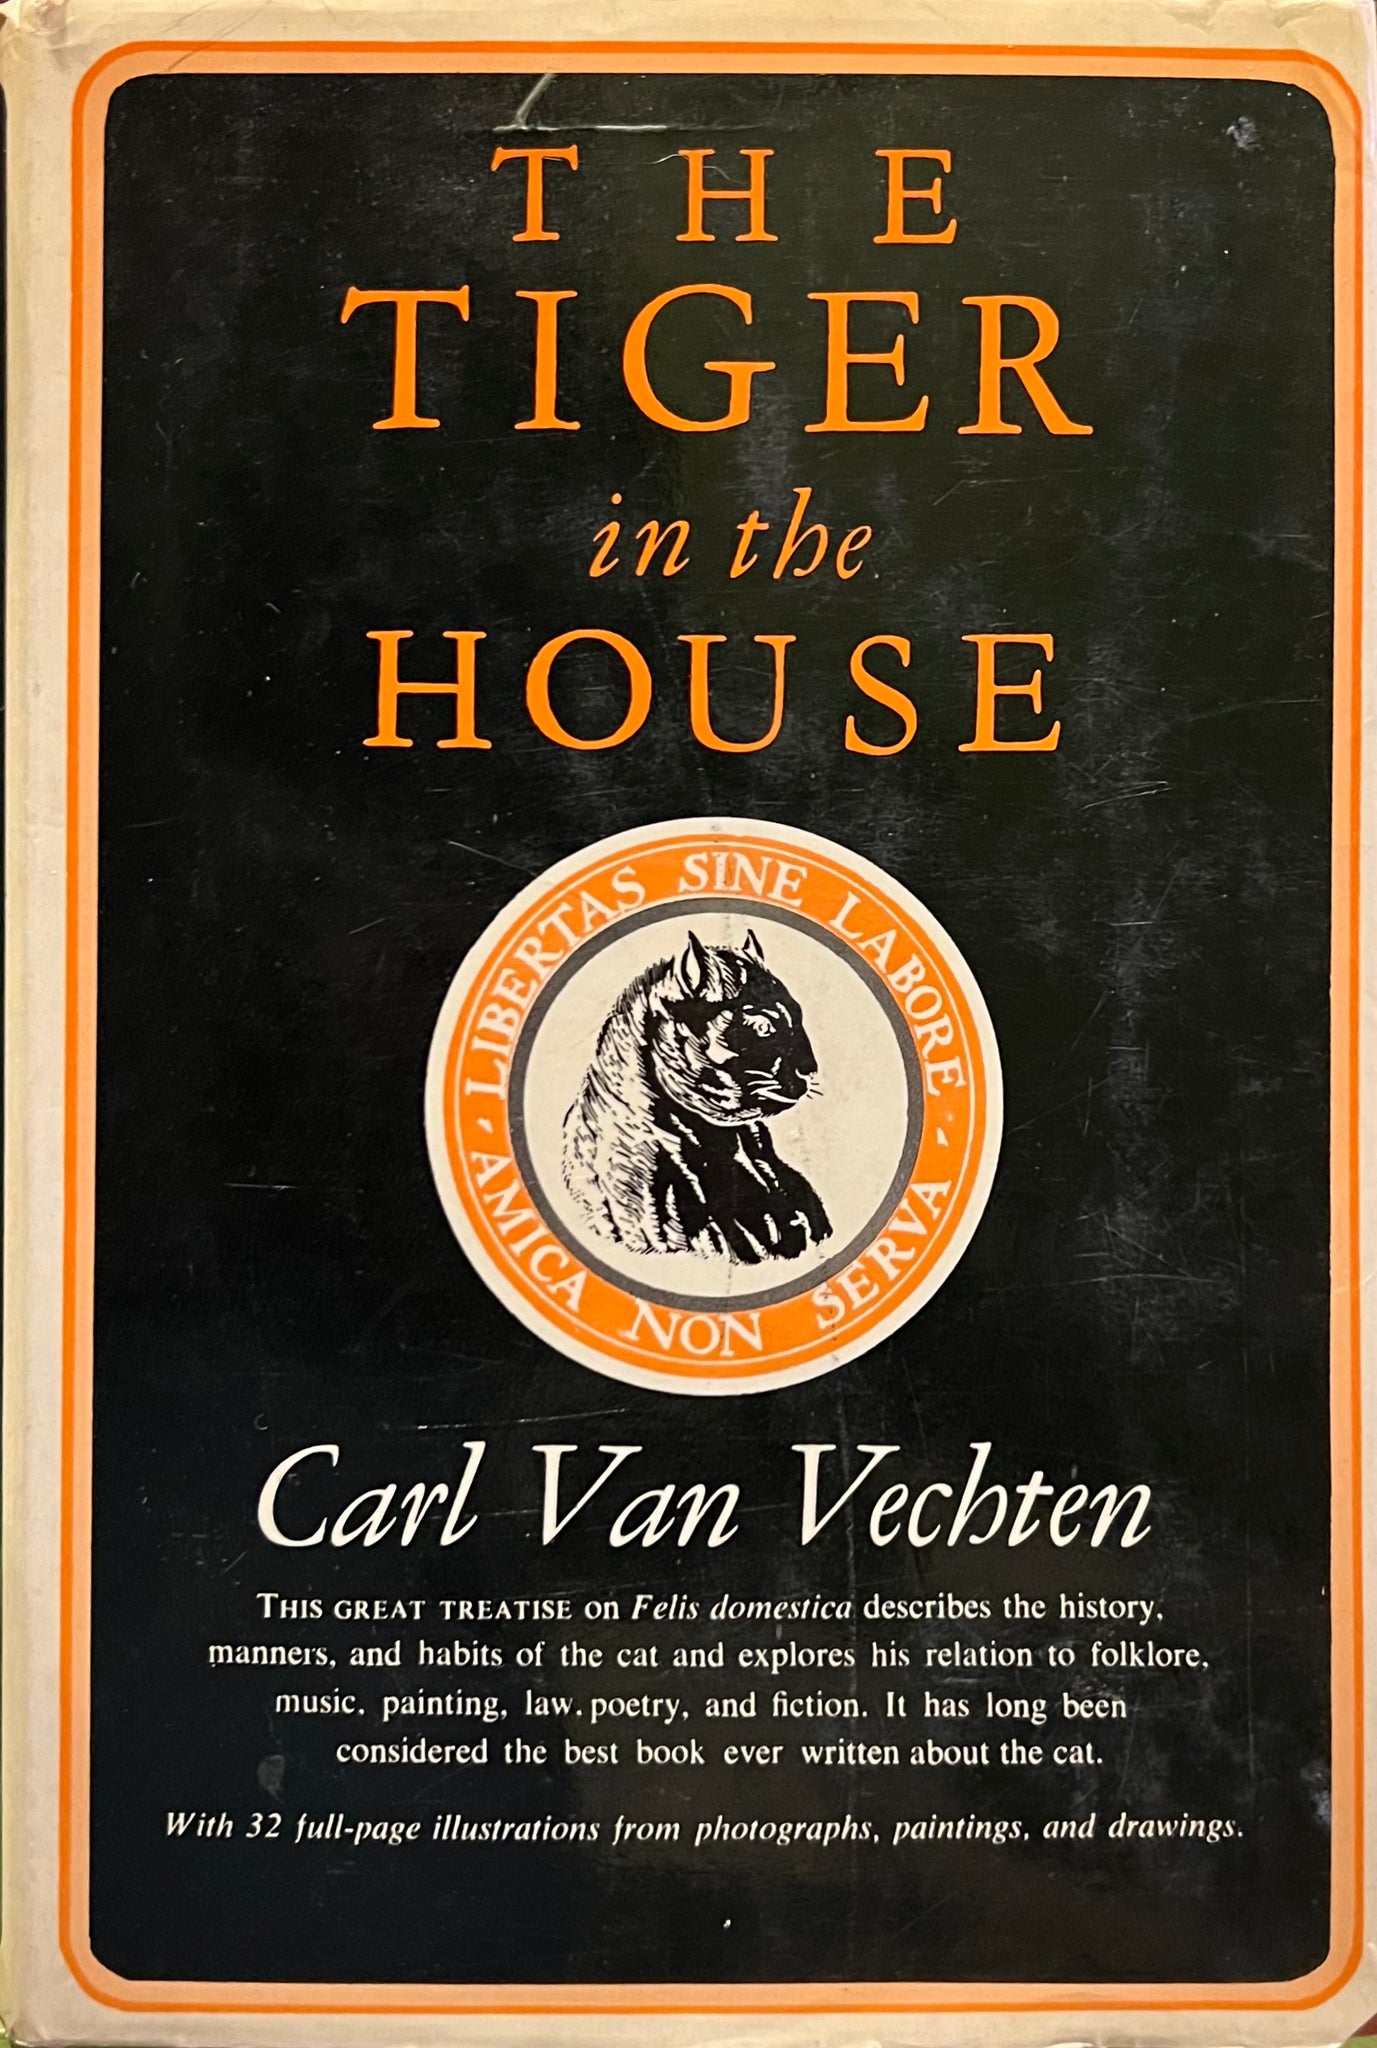 The Tiger in the House, Carl Van Vechten